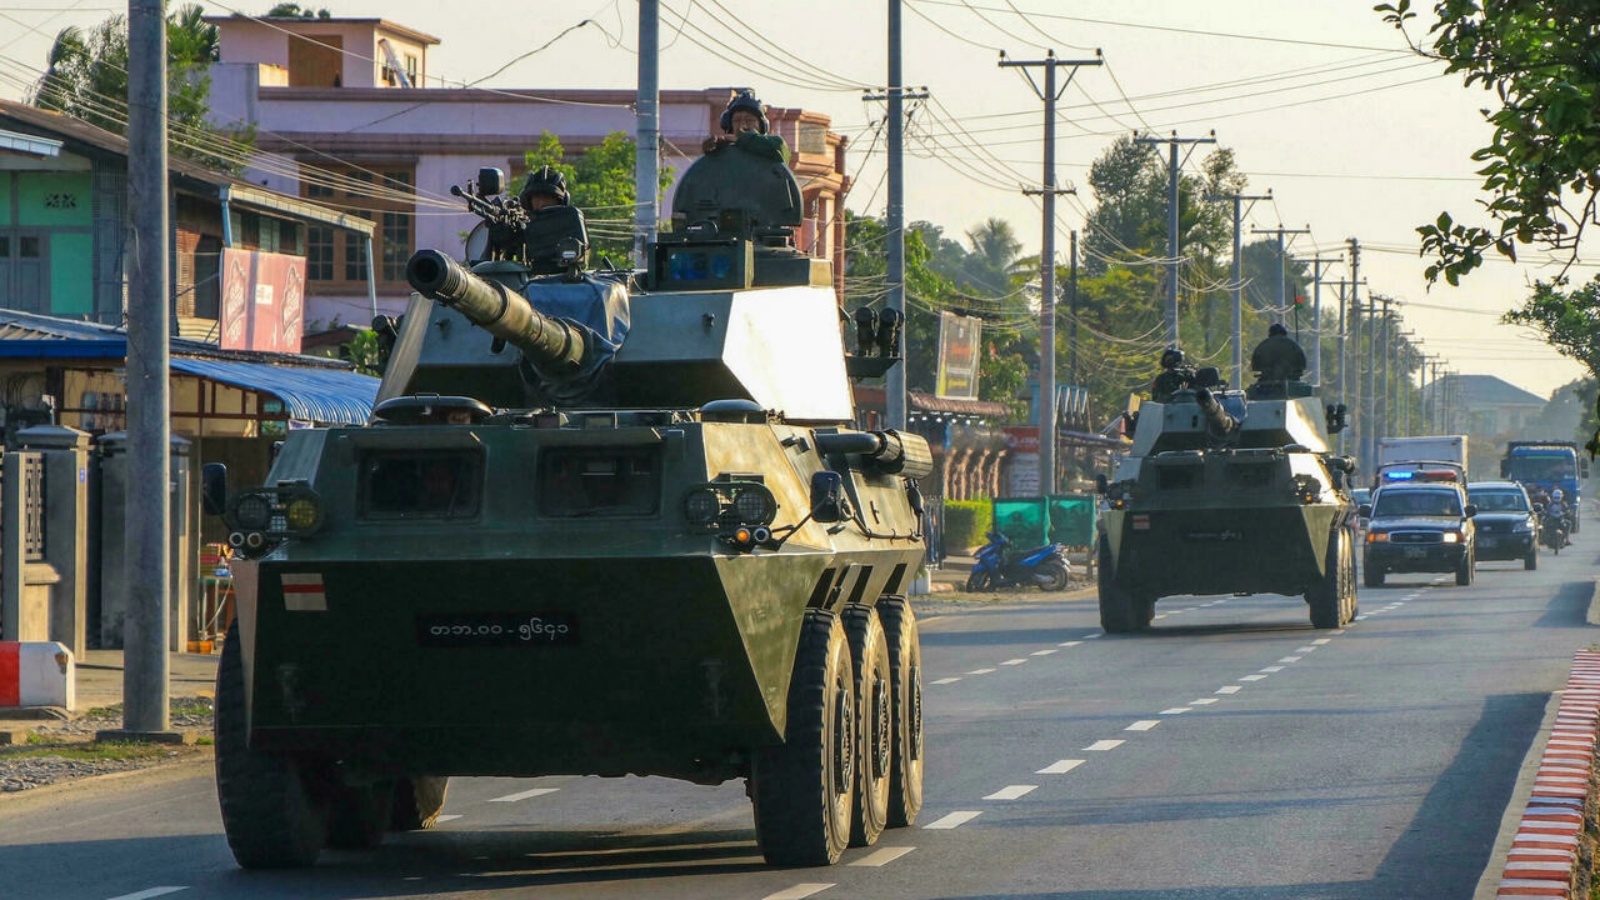 آليات عسكرية تابعة للطبقة التي أطاحت بحكومة أونغ سان سو كي في عام 2021